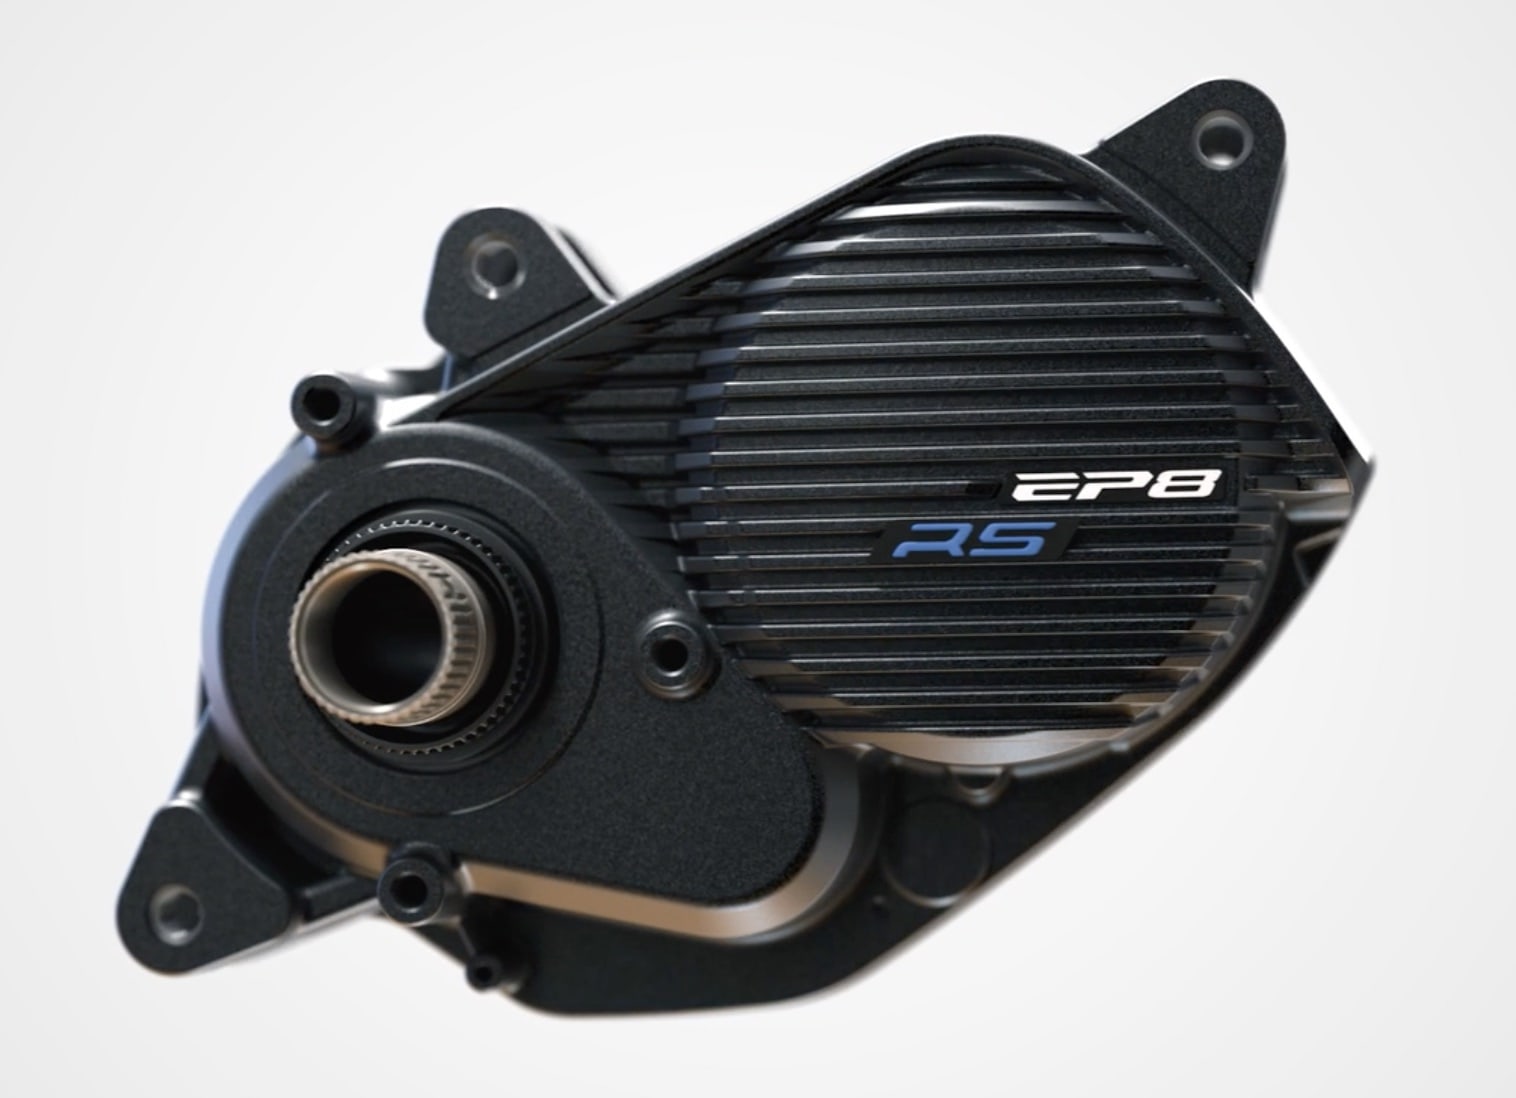 Shimano EP 8 RS Motor